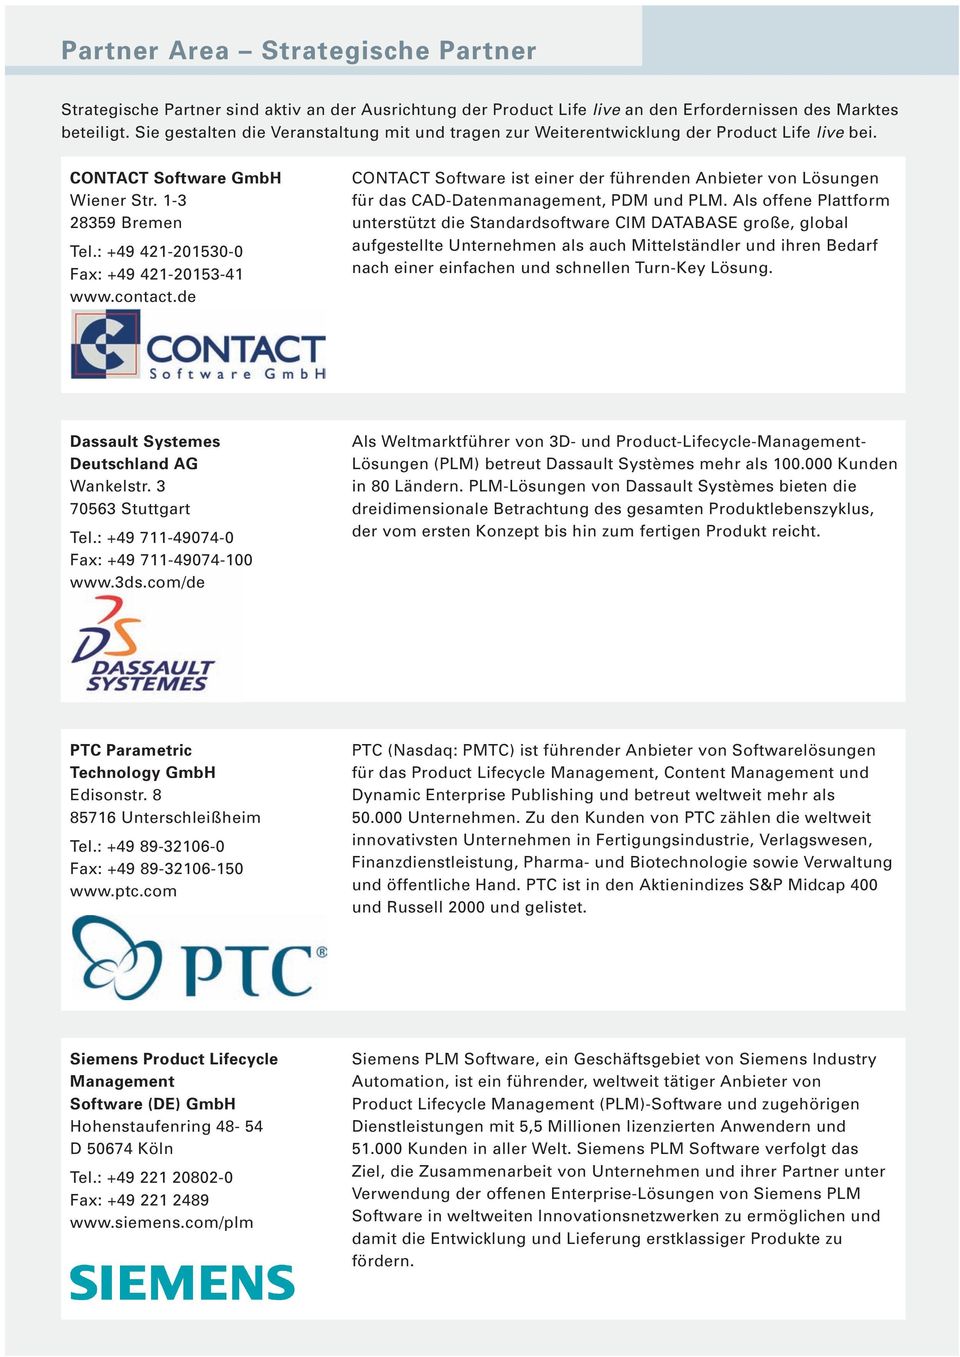 contact.de CONTACT Software ist einer der führenden Anbieter von Lösungen für das CAD-Datenmanagement, PDM und PLM.